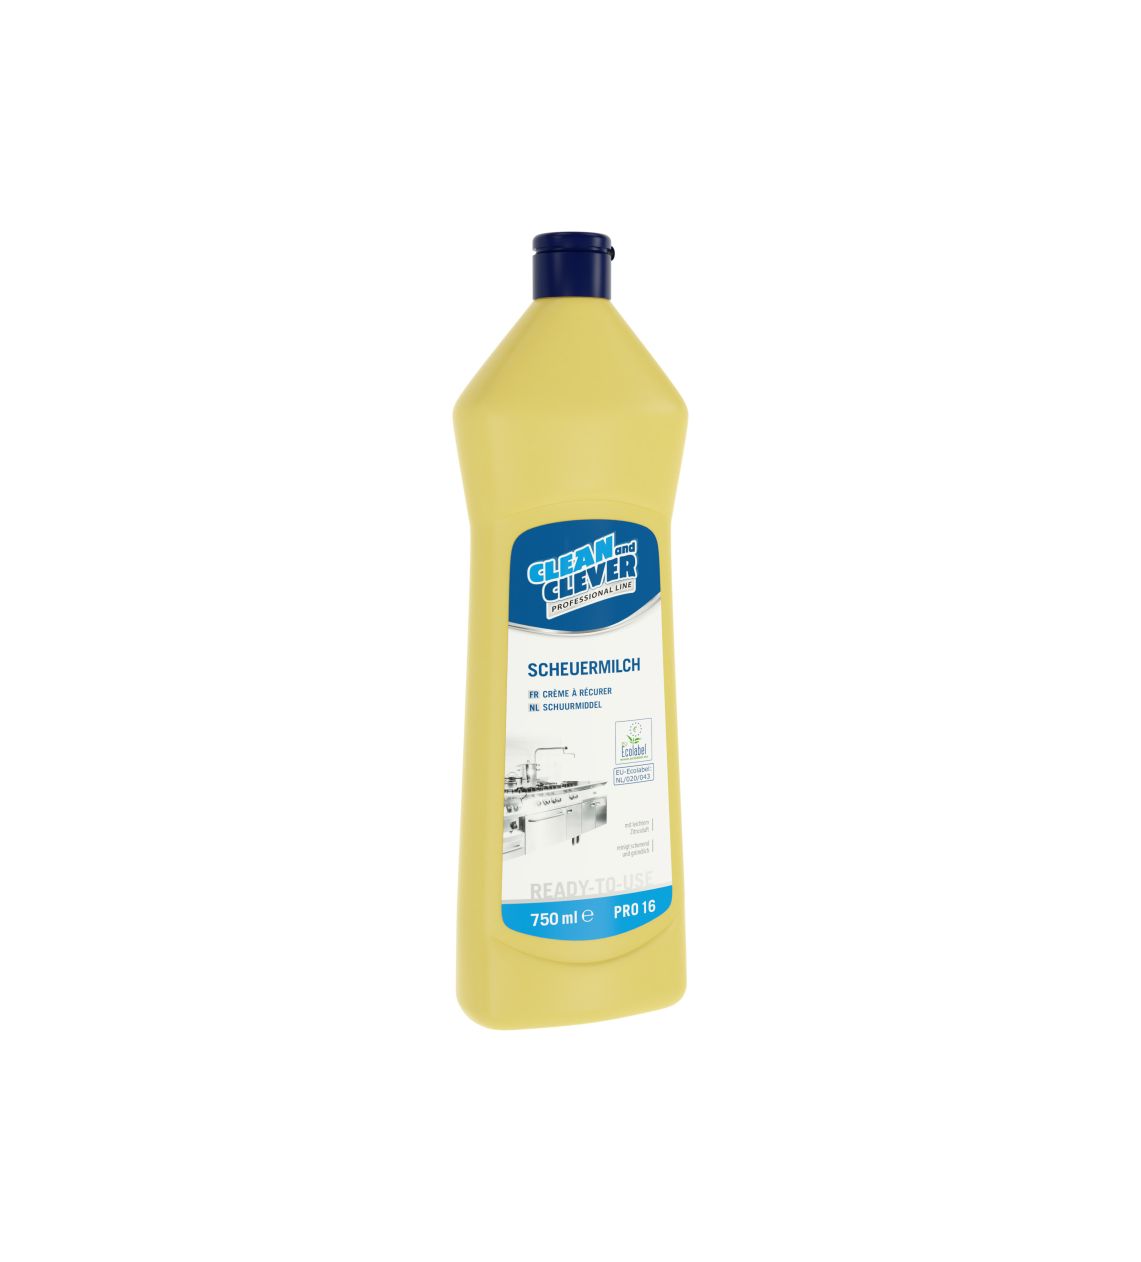  N - PRO16. Scheuermilch  zur Reinigung  750 ml 